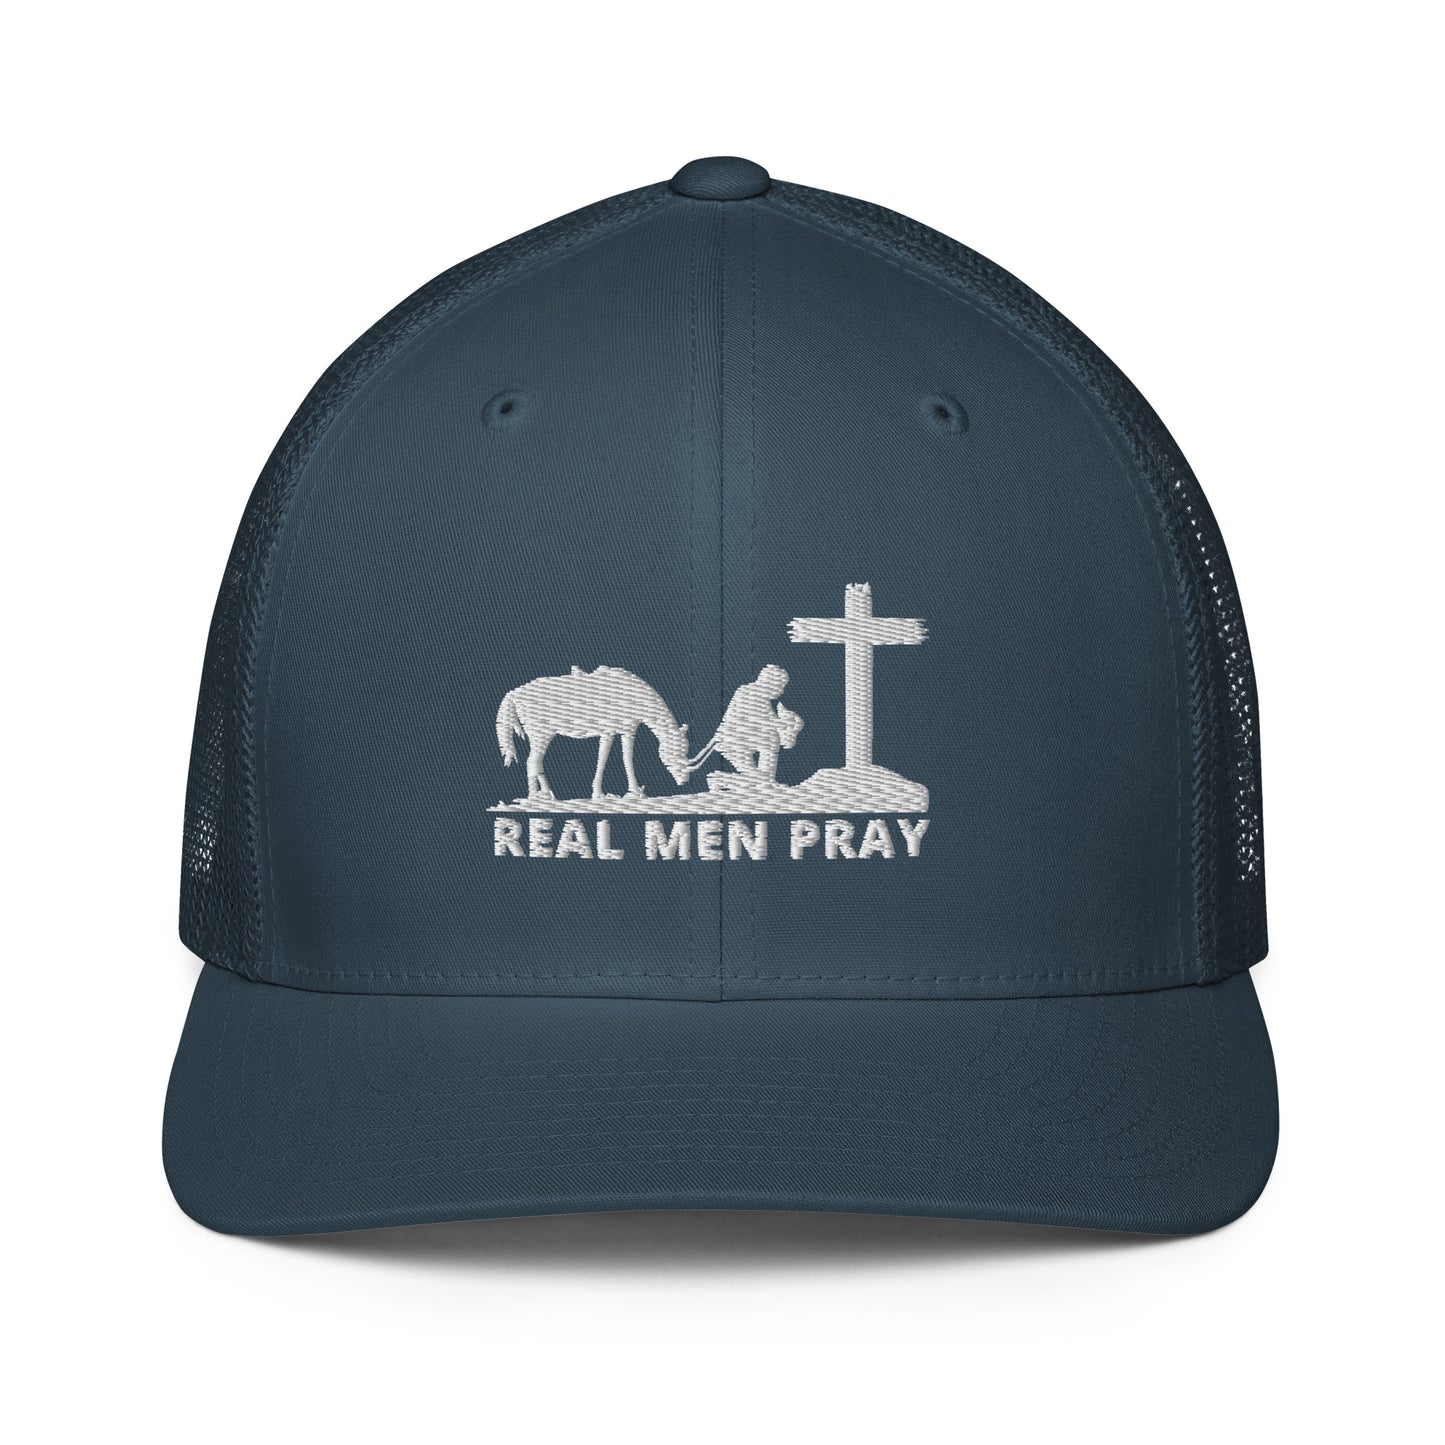 Real Men Pray - Closed-back trucker cap